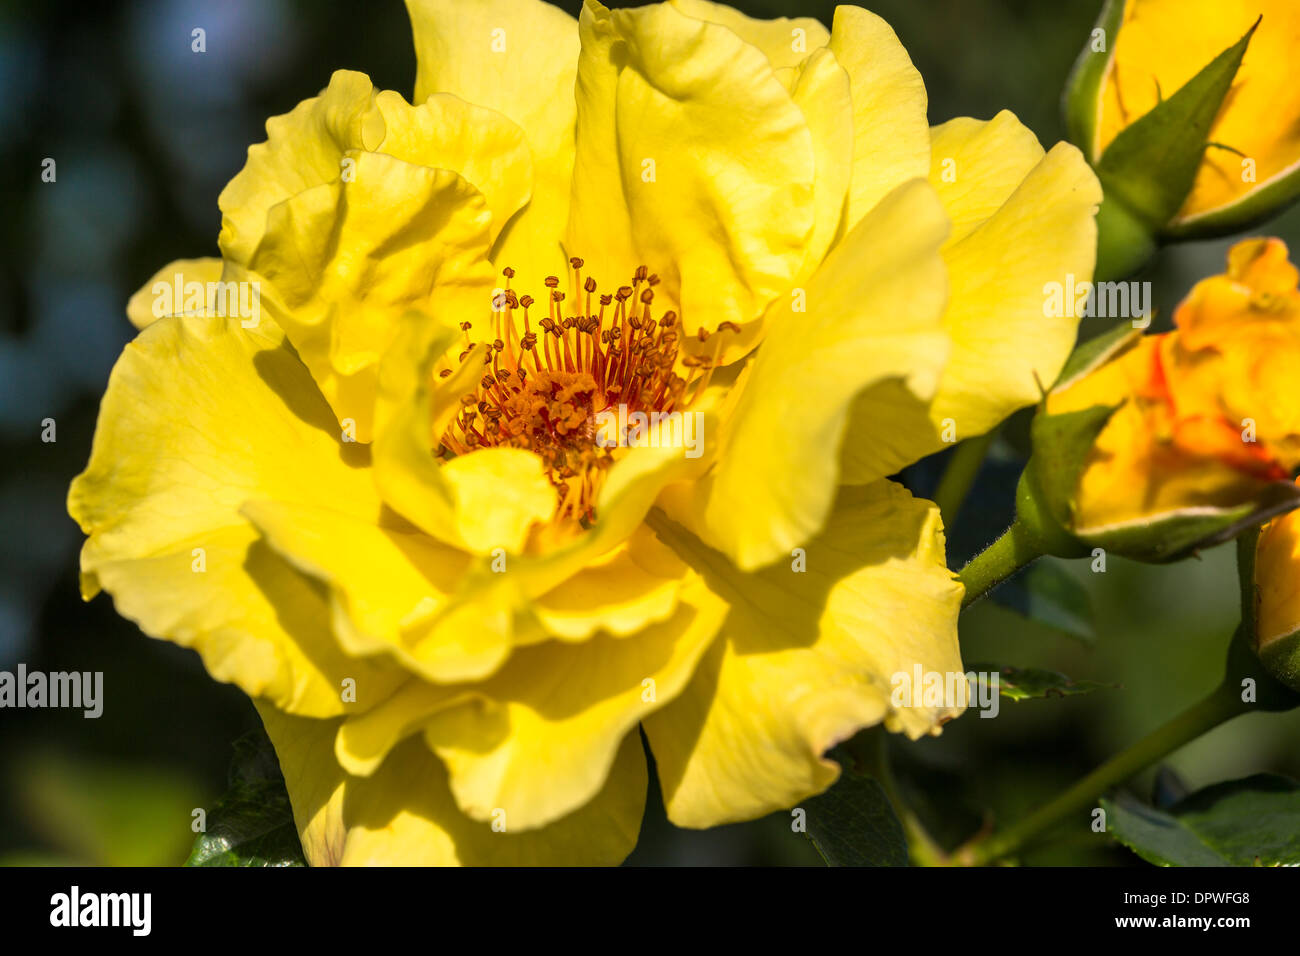 Single beautiful yellow rose Stock Photo